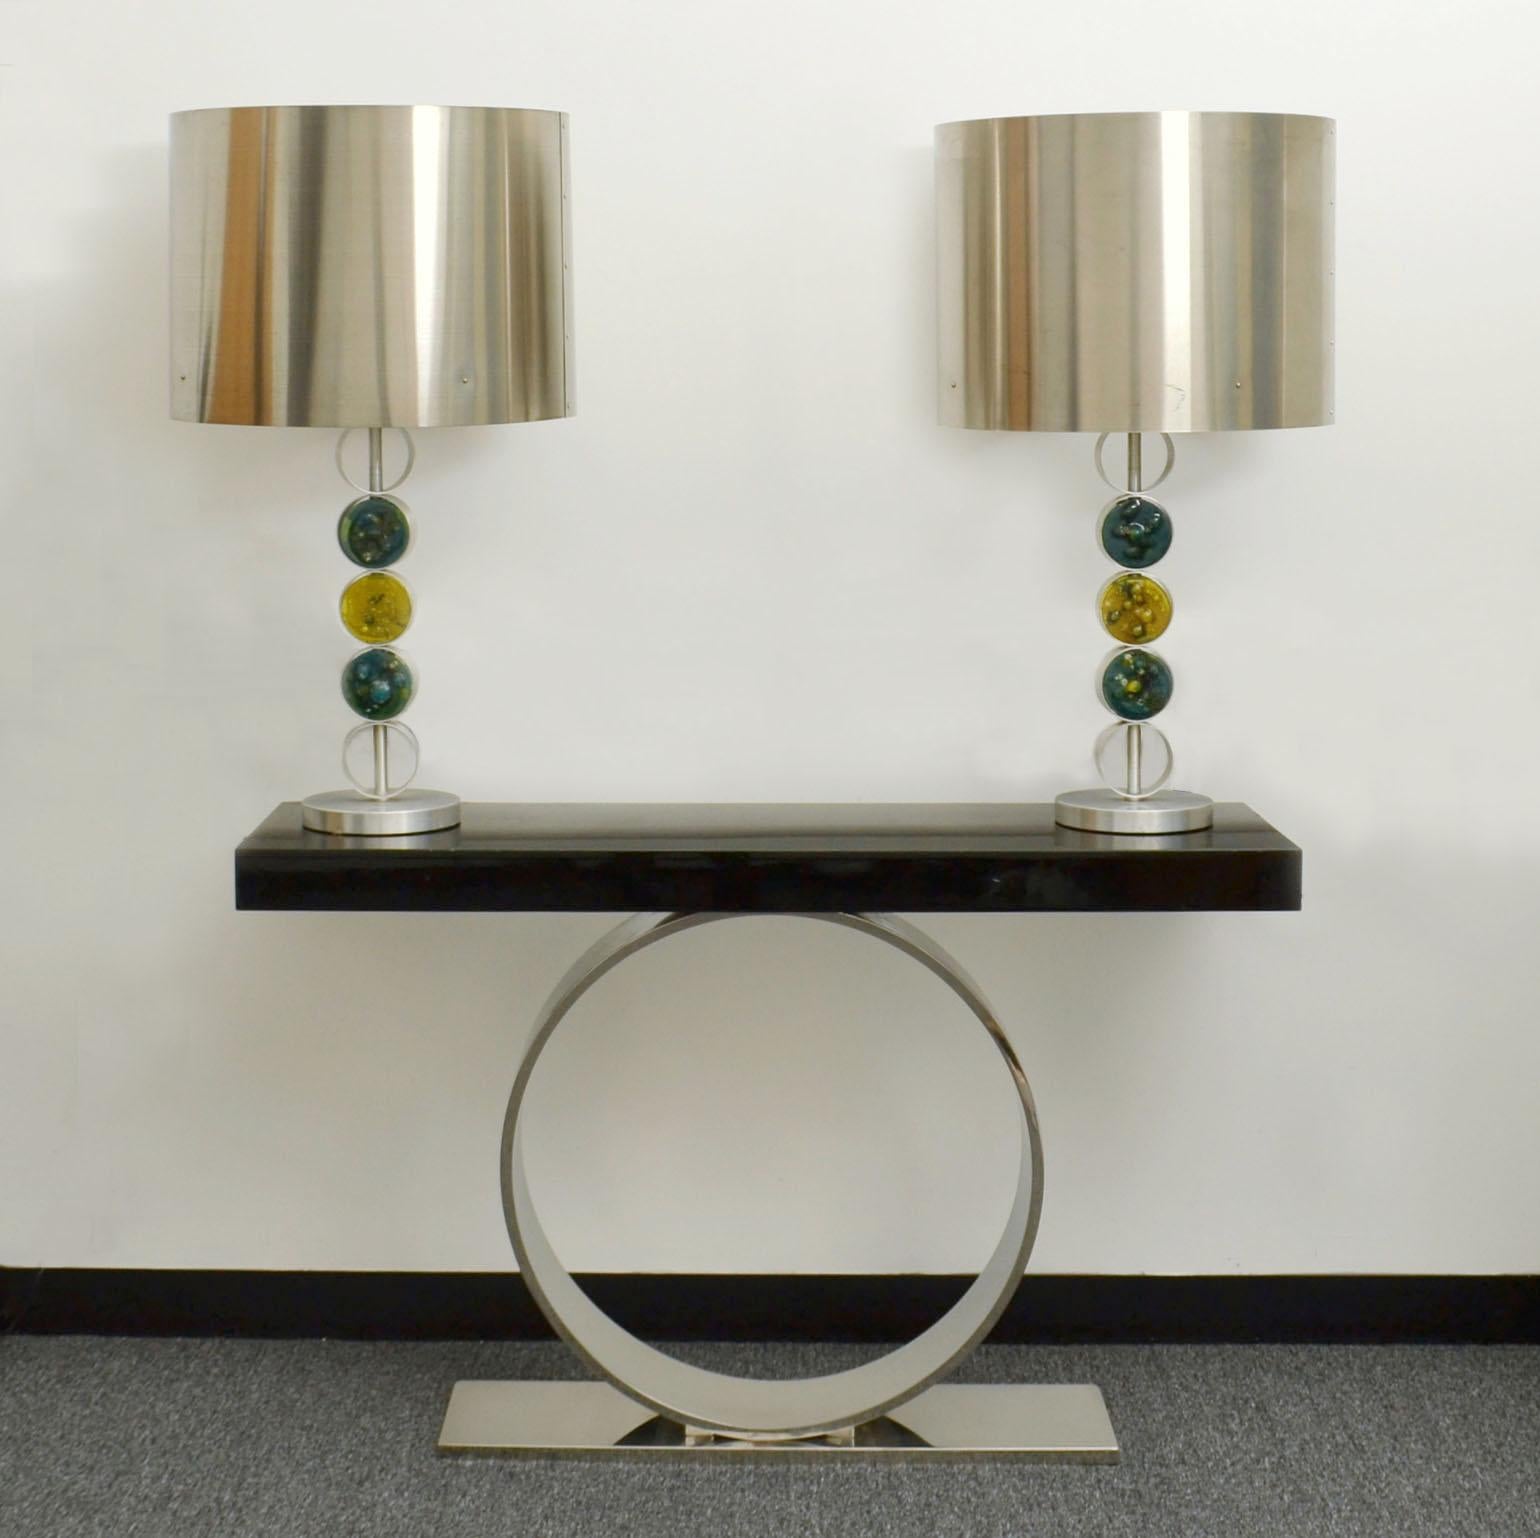 Les lampes de table RAAK sont grandes, modernes et d'un design simple, réalisées en aluminium, acier inoxydable et verre fait main, 1972 aux Pays-Bas. Ces lampes sont attribuées à la designer Nanny Still, l'une des plus célèbres créatrices de la